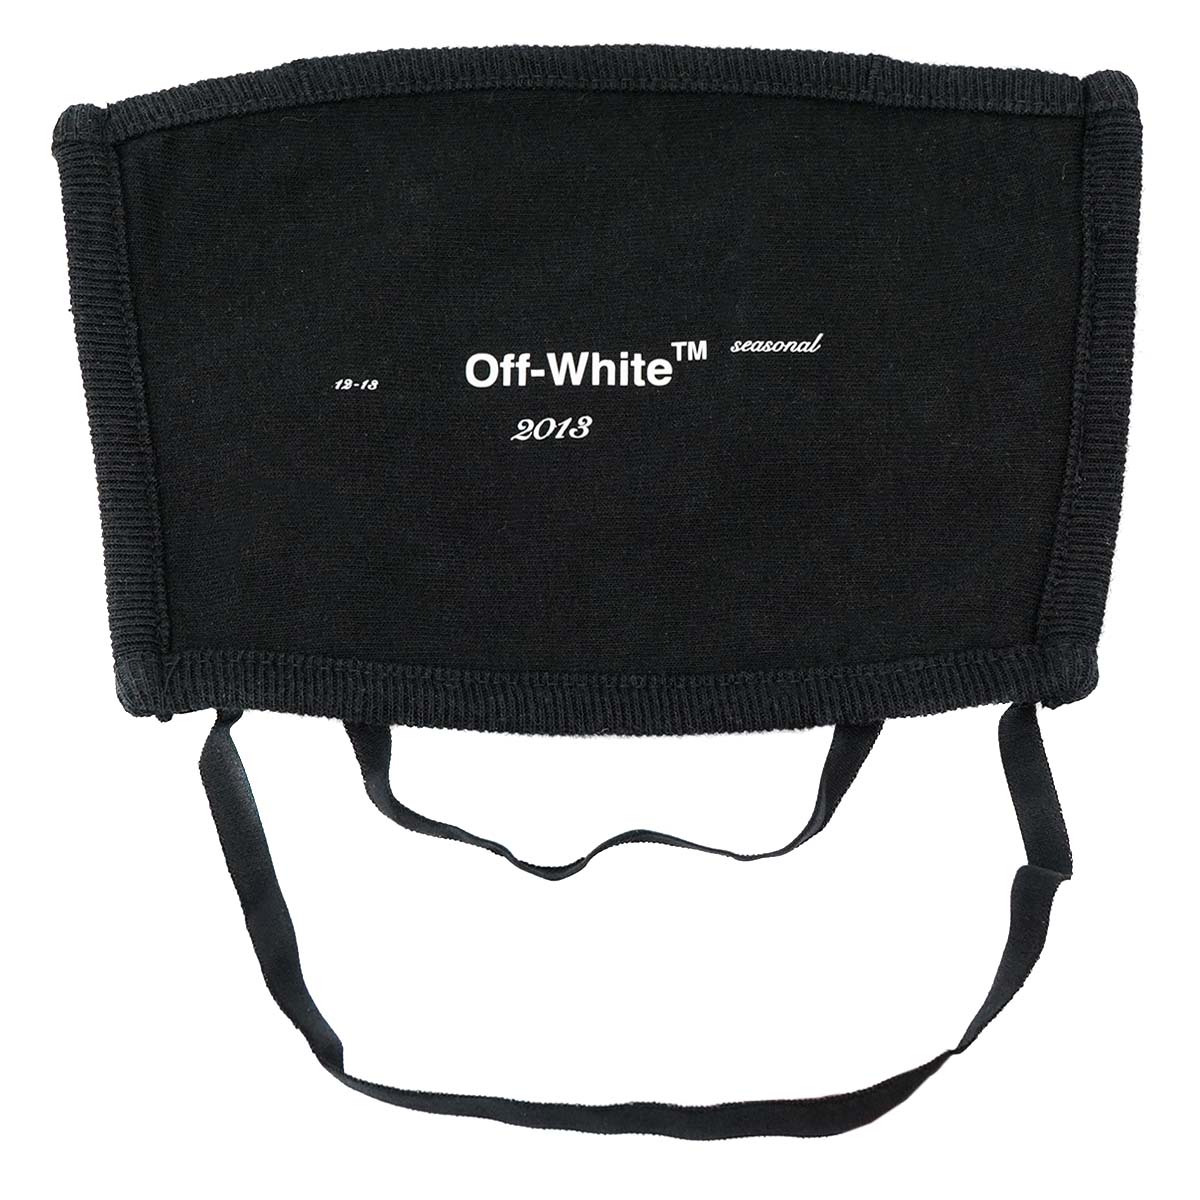 Off-White オフホワイト マスク OMRG002E20FAB002 レディース メンズ 女性 男性 ユニセックス 男女兼用 コットンマスク 1001 BLACK ブラック